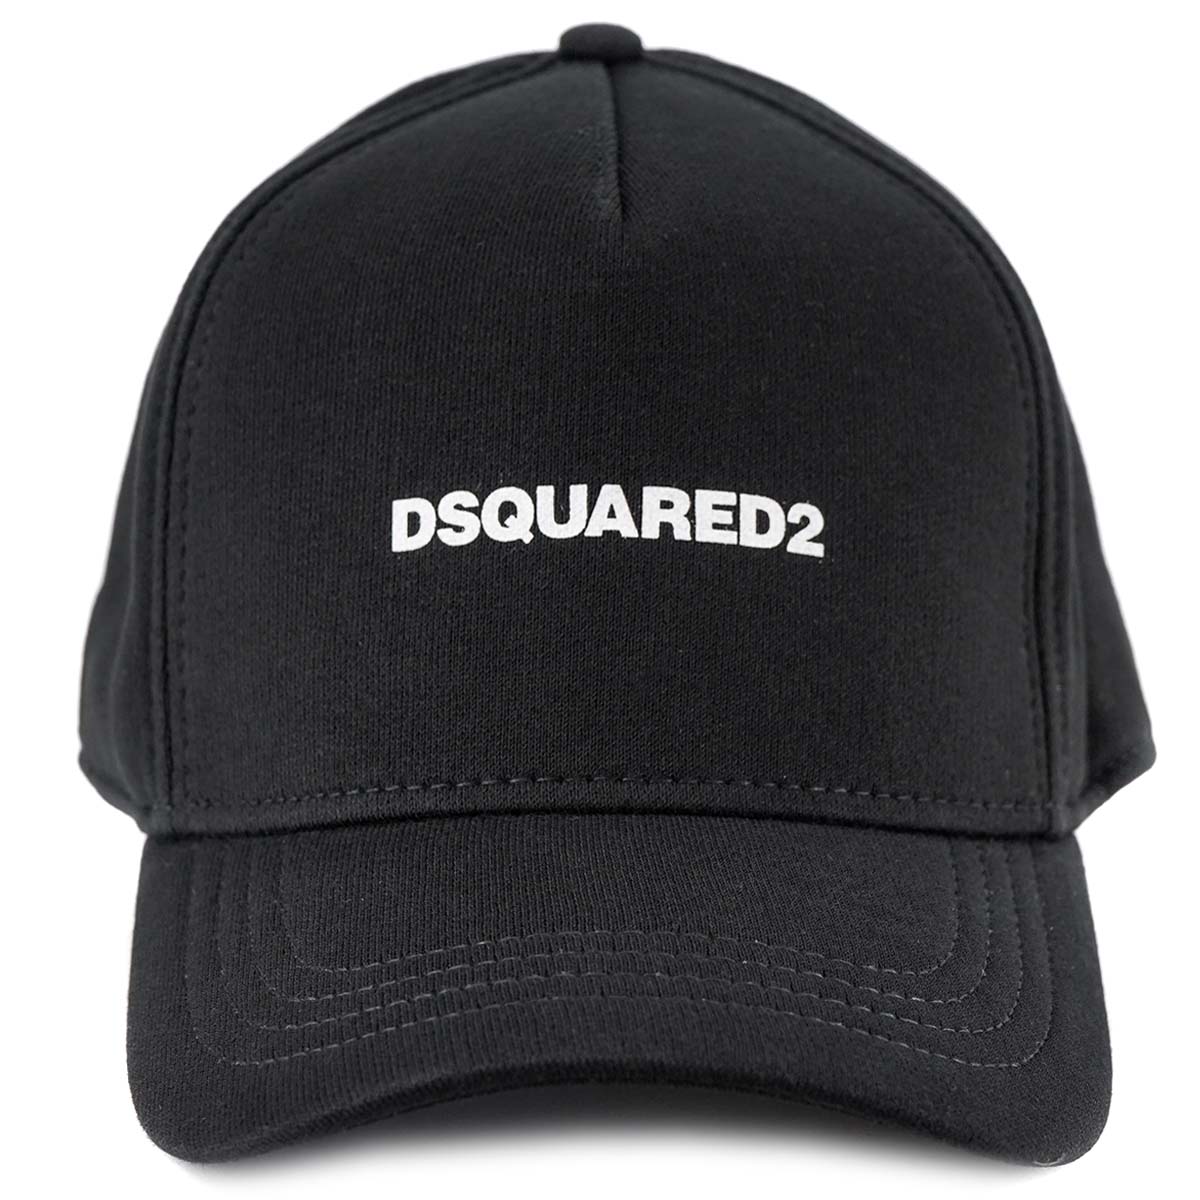 DSQUARED2 ディースクエアード ベースボールキャップ S82BC0661 BASEBALL CAP メンズ 男性 帽子 M063 BLACK ブラック